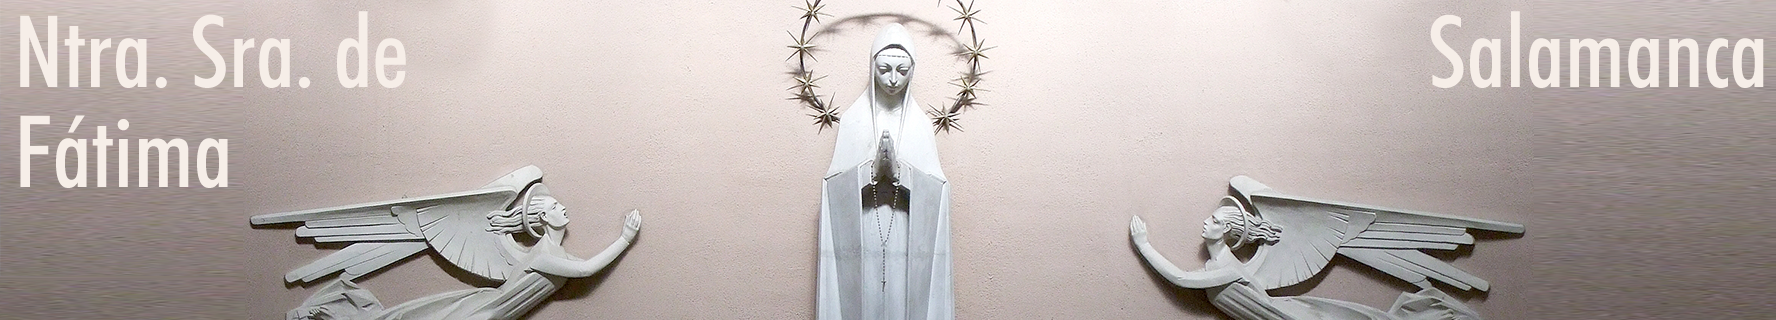 Parroquia de Nuestra Señora de Fátima. Salamanca.